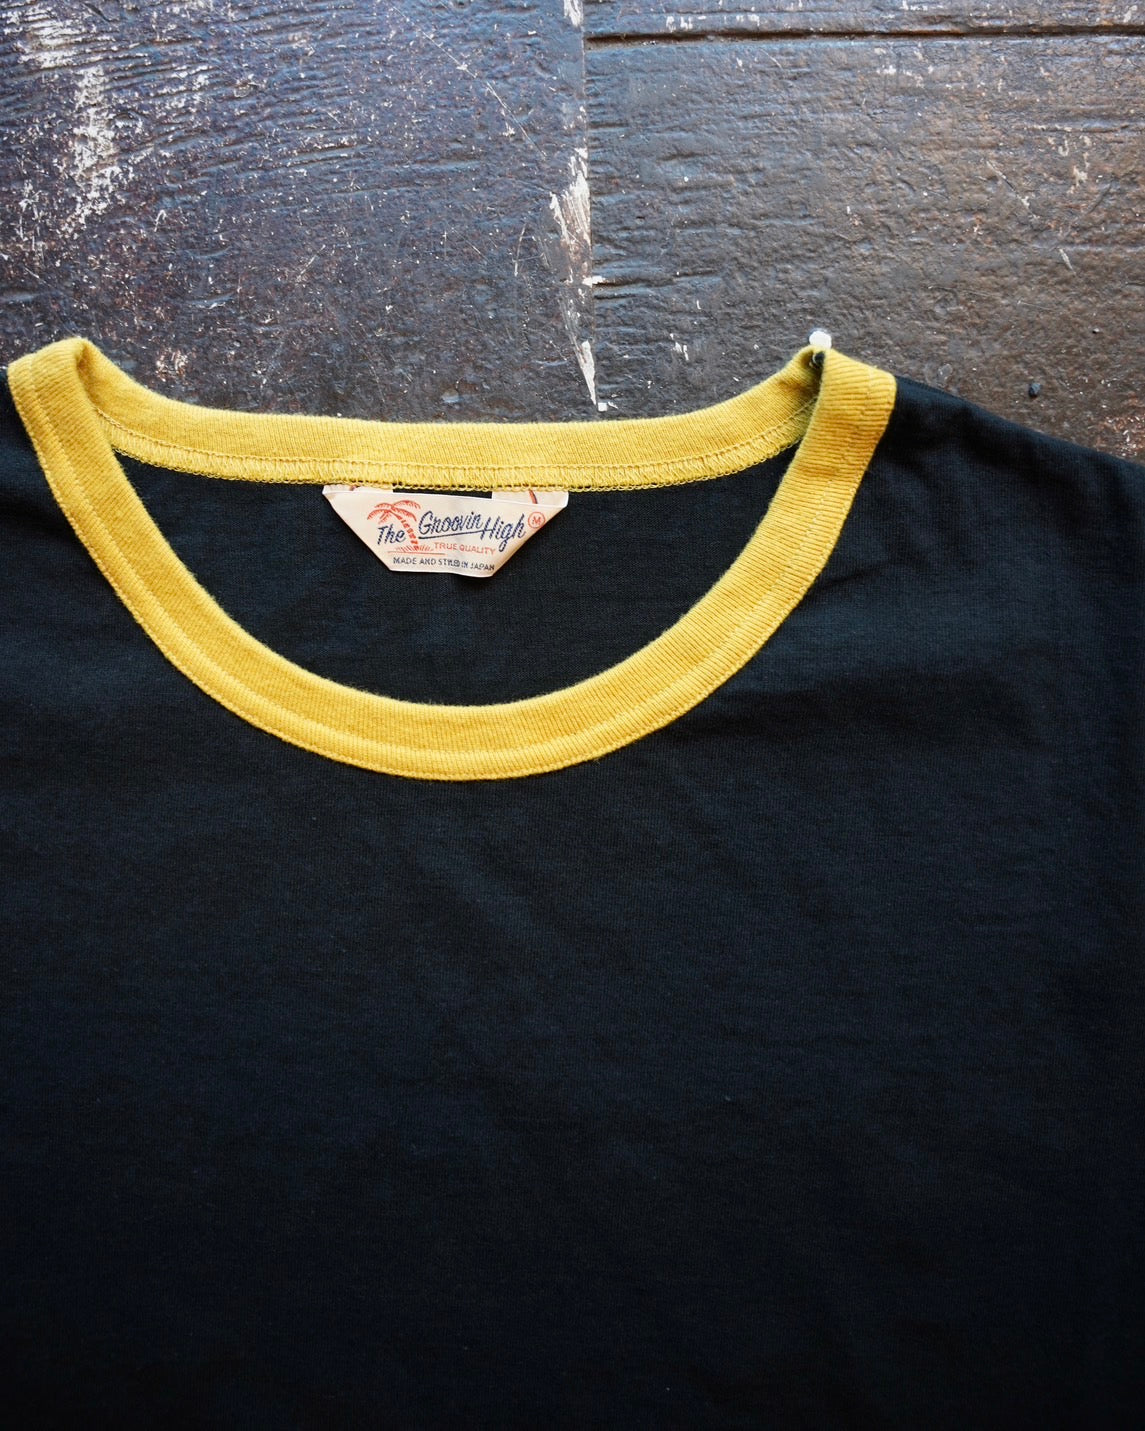 #459 1950s Cotton T-shirt